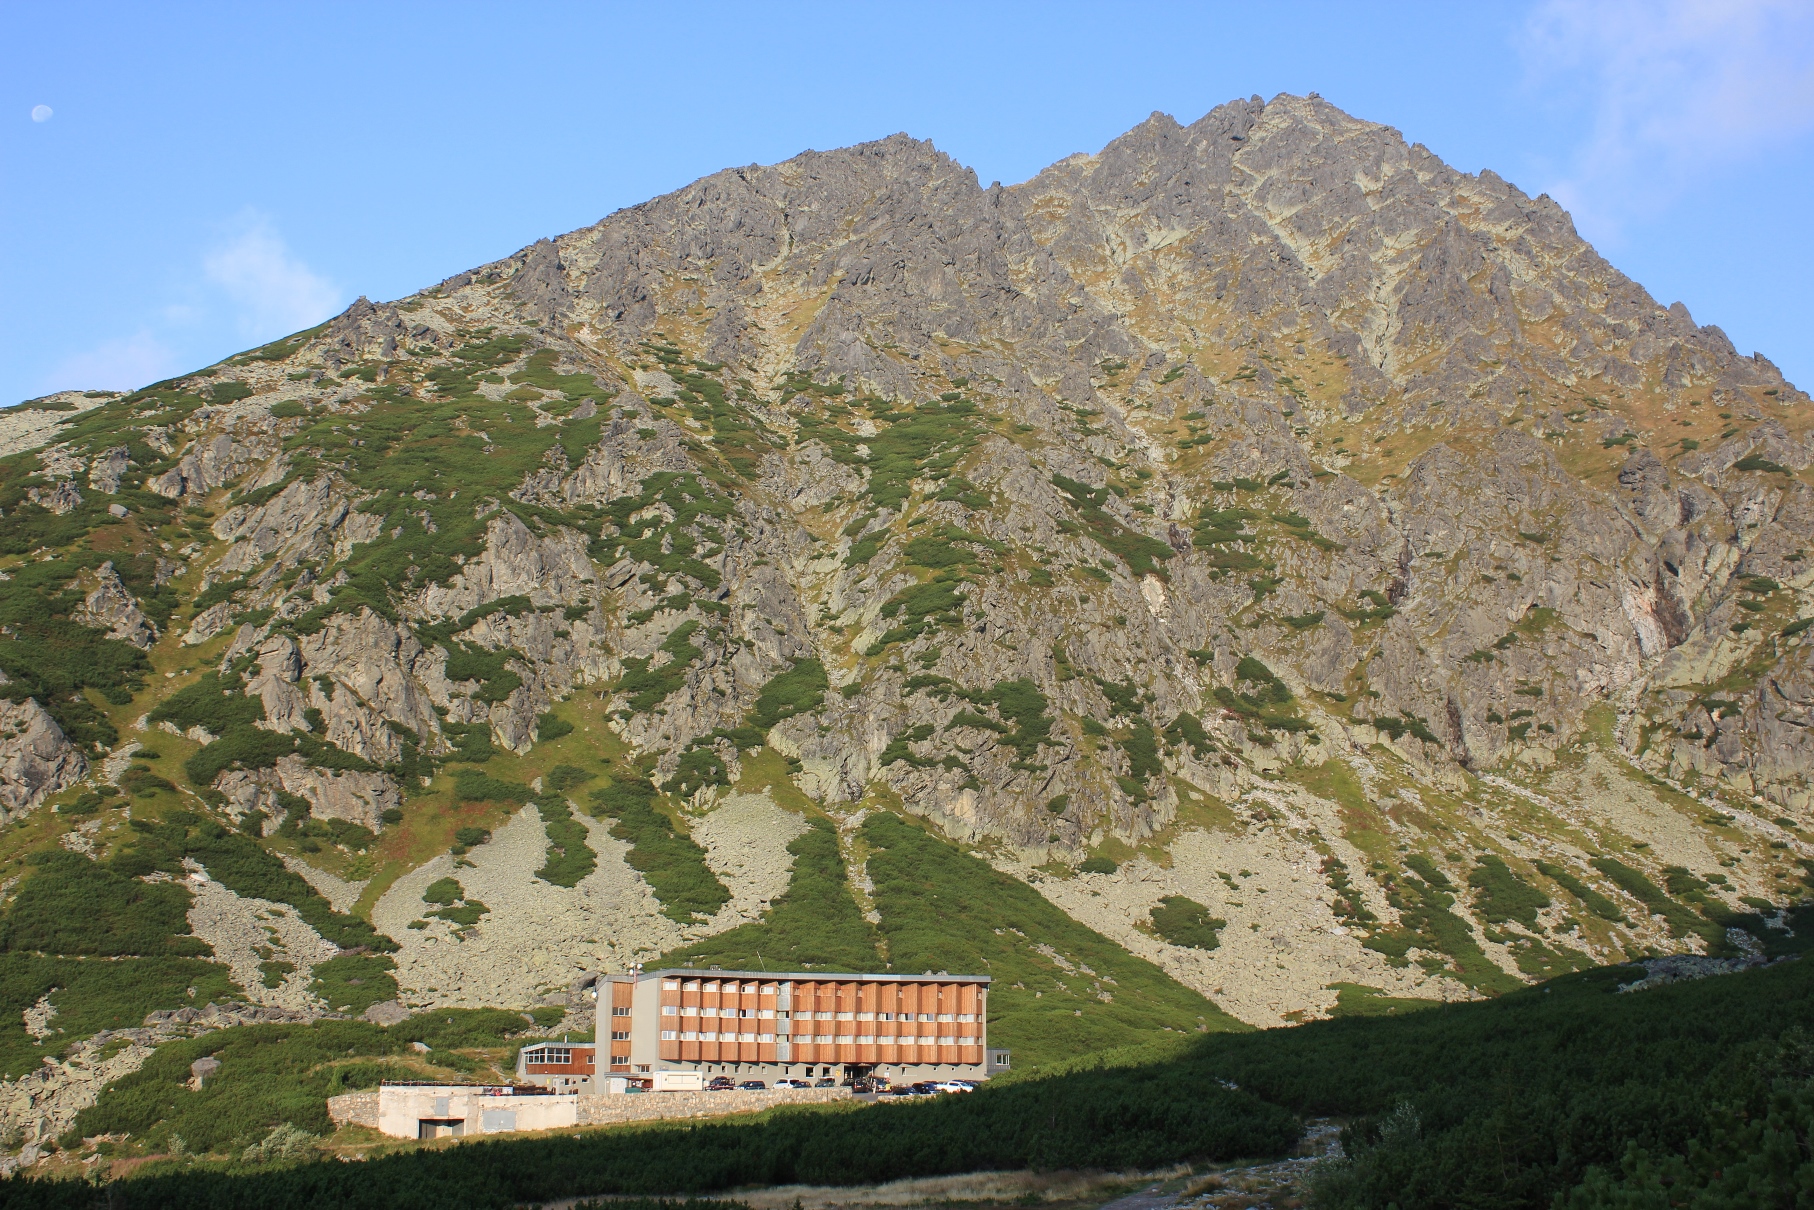 素朴な山岳国スロバキア、ポーランドハイキングと絶景の山岳リゾートホテル滞在10日間